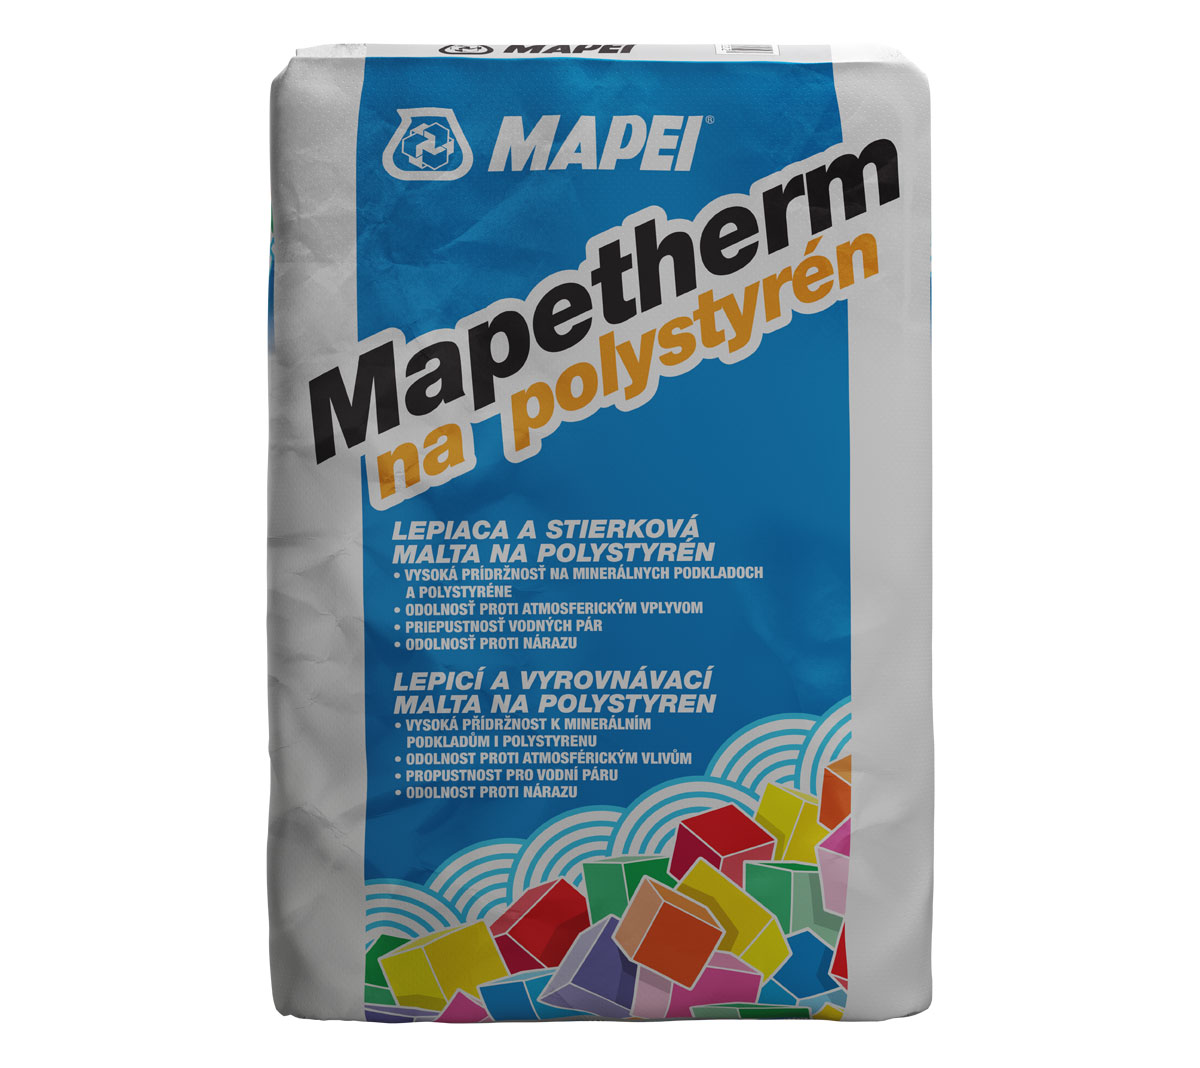 Mapetherm na polystyrén je lepiaca malta určená na lepenie a stierkovanie tepelnoizolačných dosiek z polystyrénu